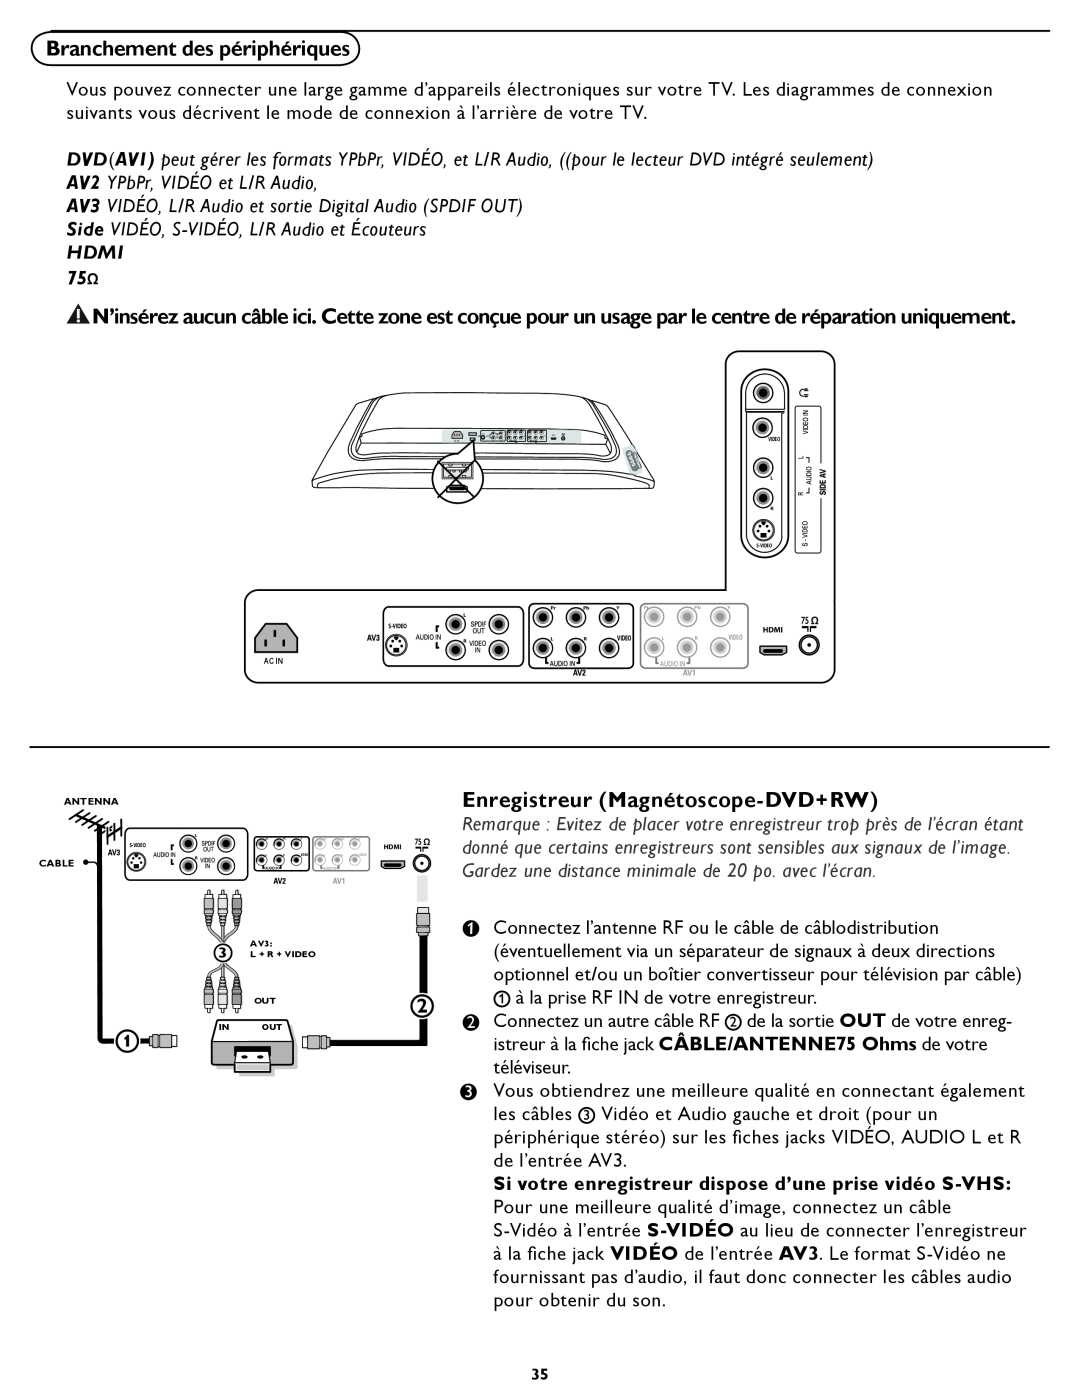 Magnavox 26MD/32MD251D user manual Branchement des périphériques, Enregistreur Magnétoscope-DVD+RW, Hdmi 